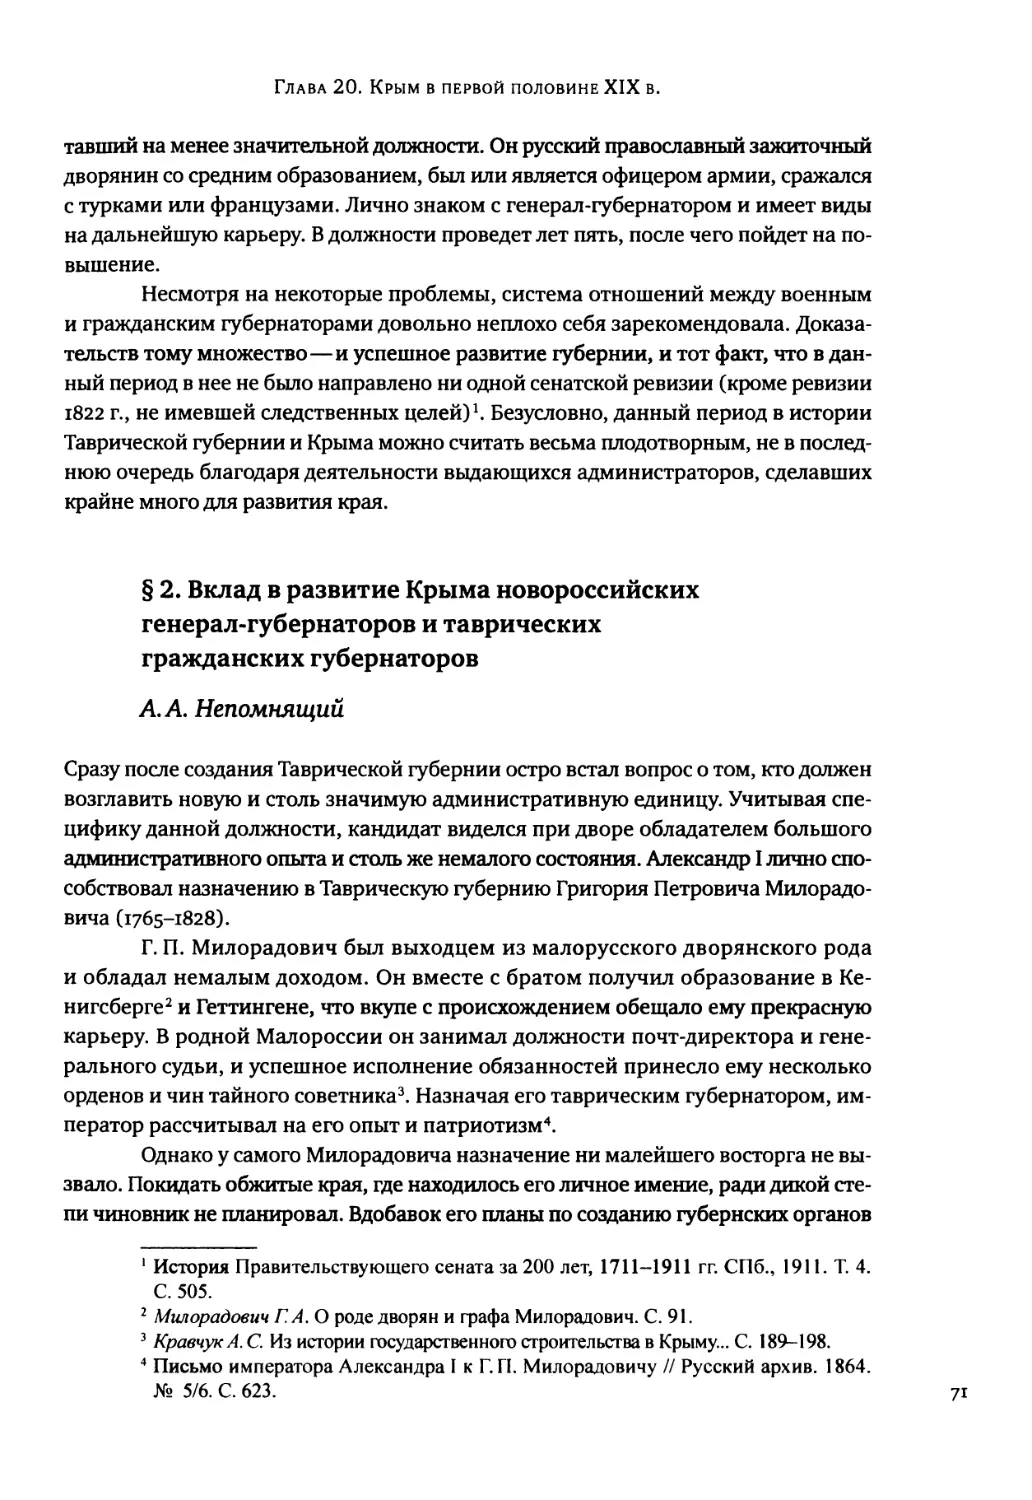 § 2. Вклад в развитие Крыма новороссийских генерал-губернаторов и таврических гражданских губернаторов